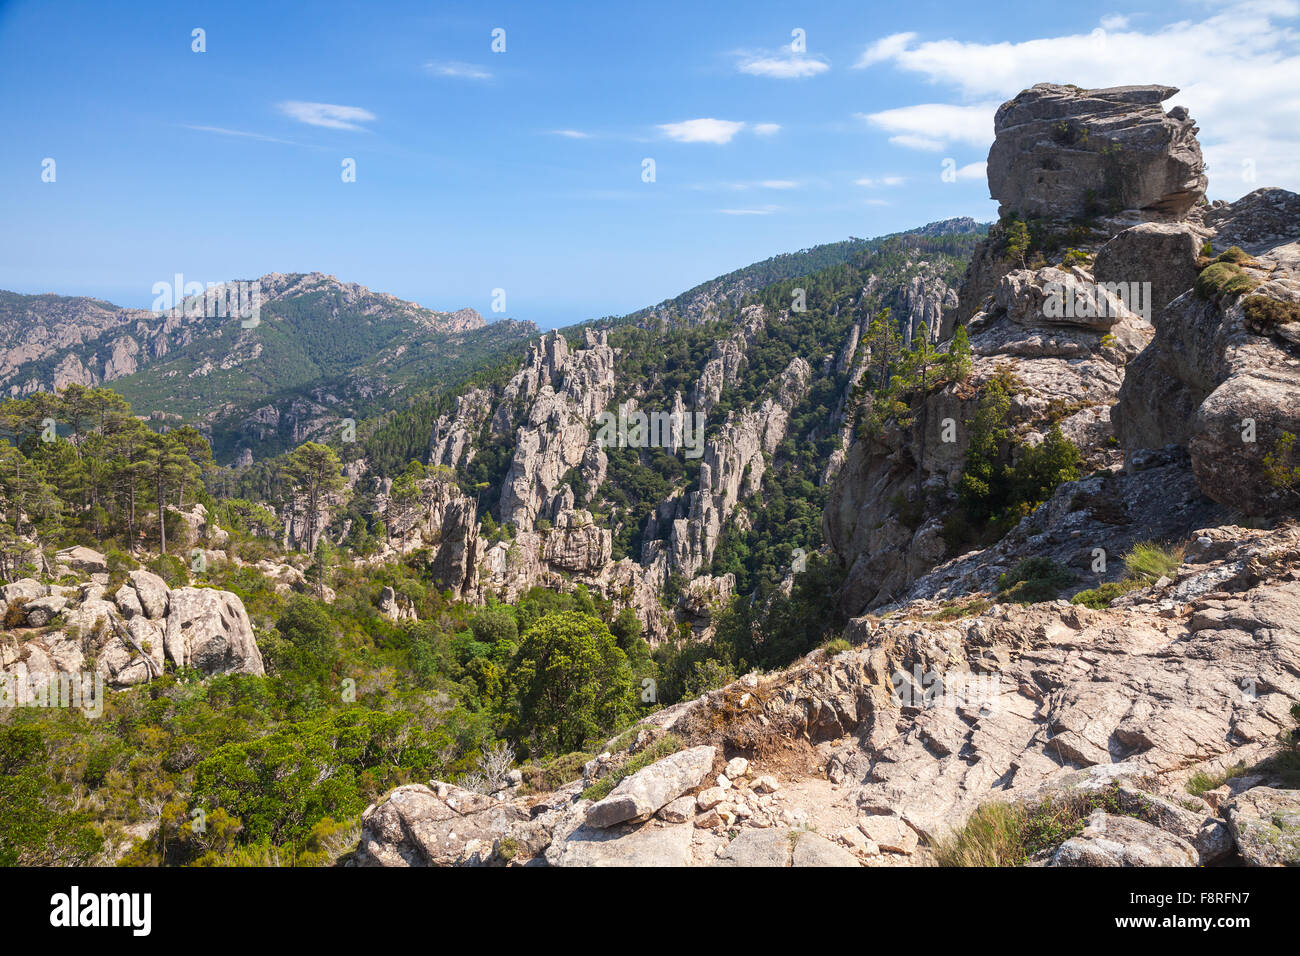 Montagne sauvage, rugueux des roches. La partie sud de la Corse, France Banque D'Images